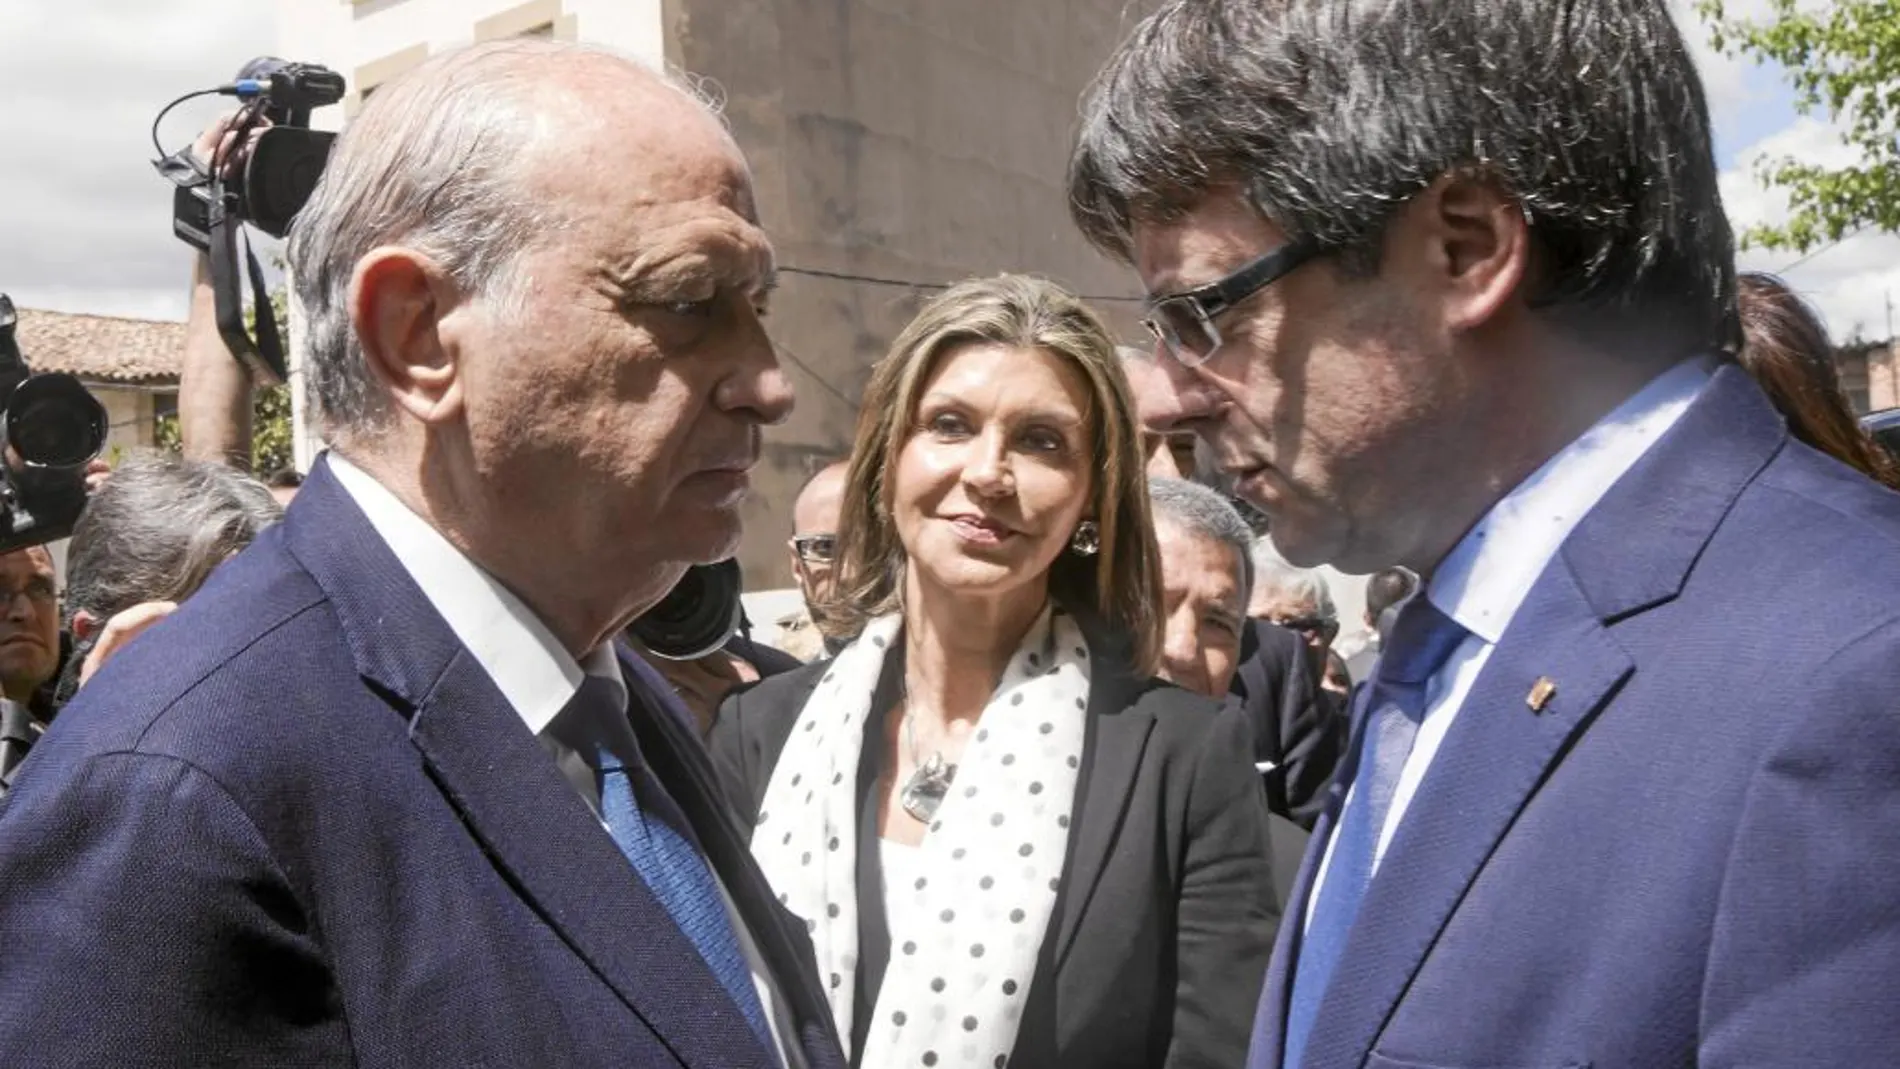 El ministro Fernández Díaz y el president Puigdemont coincidieron el pasado domingo en Vic